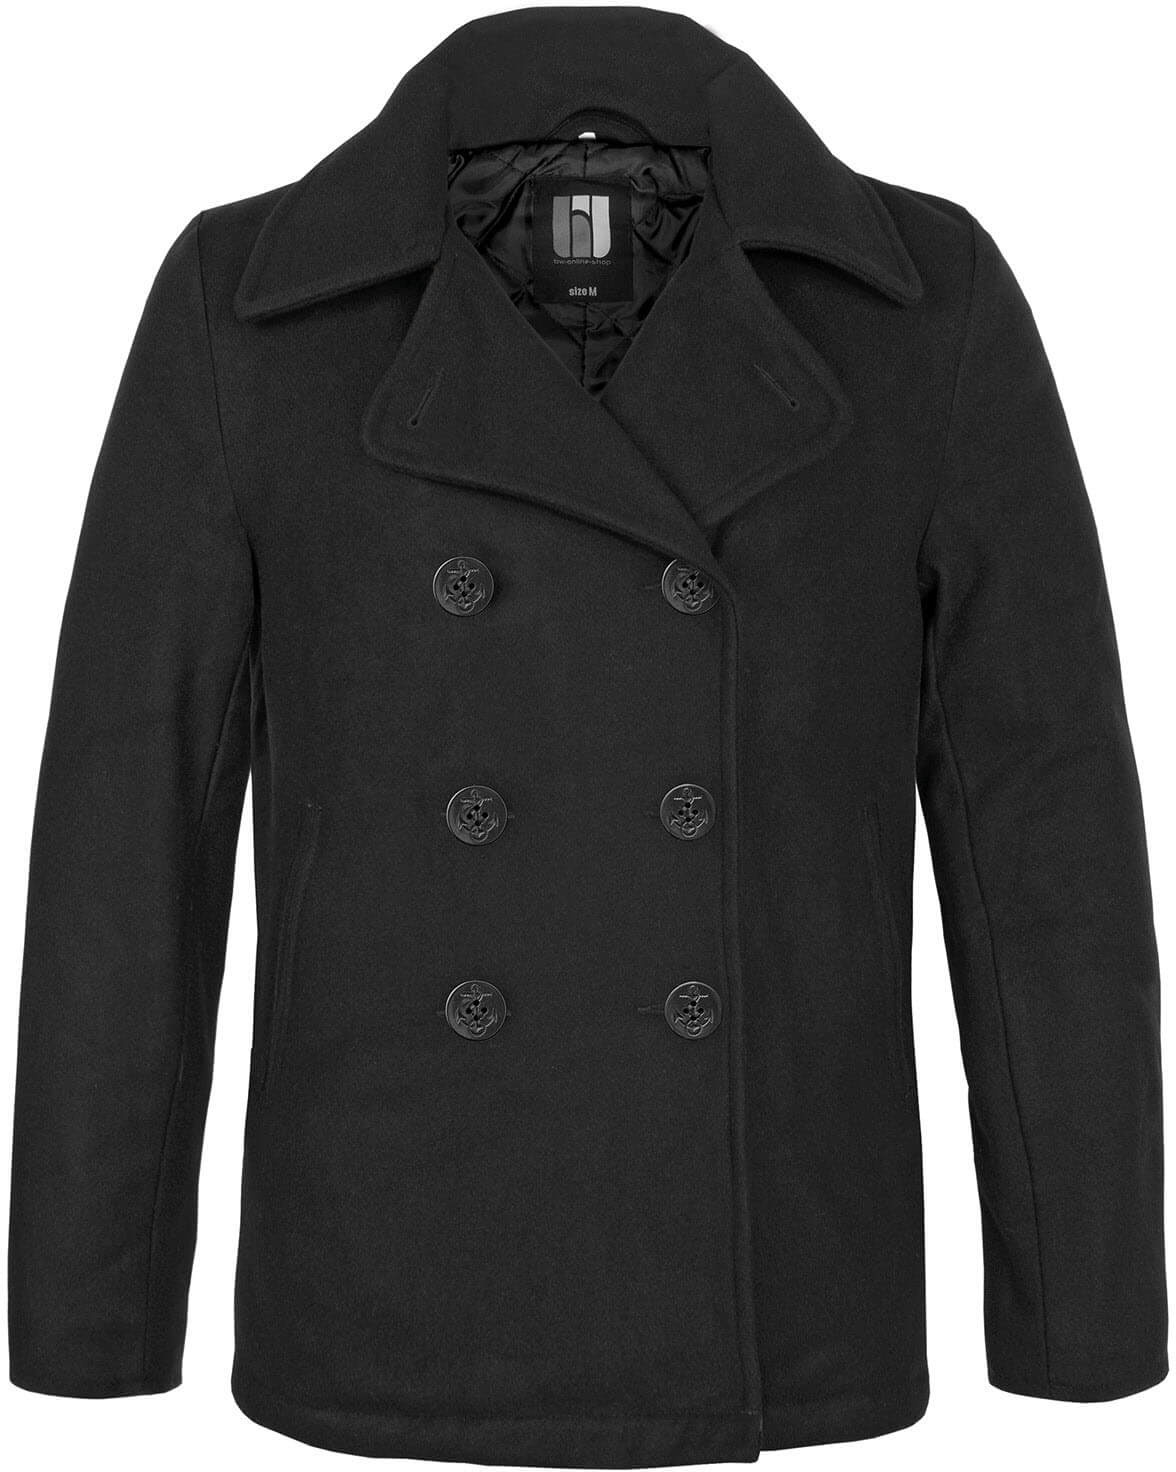 bw-online-shop Navy Pea Coat Mantel schwarz, Größe 3XL